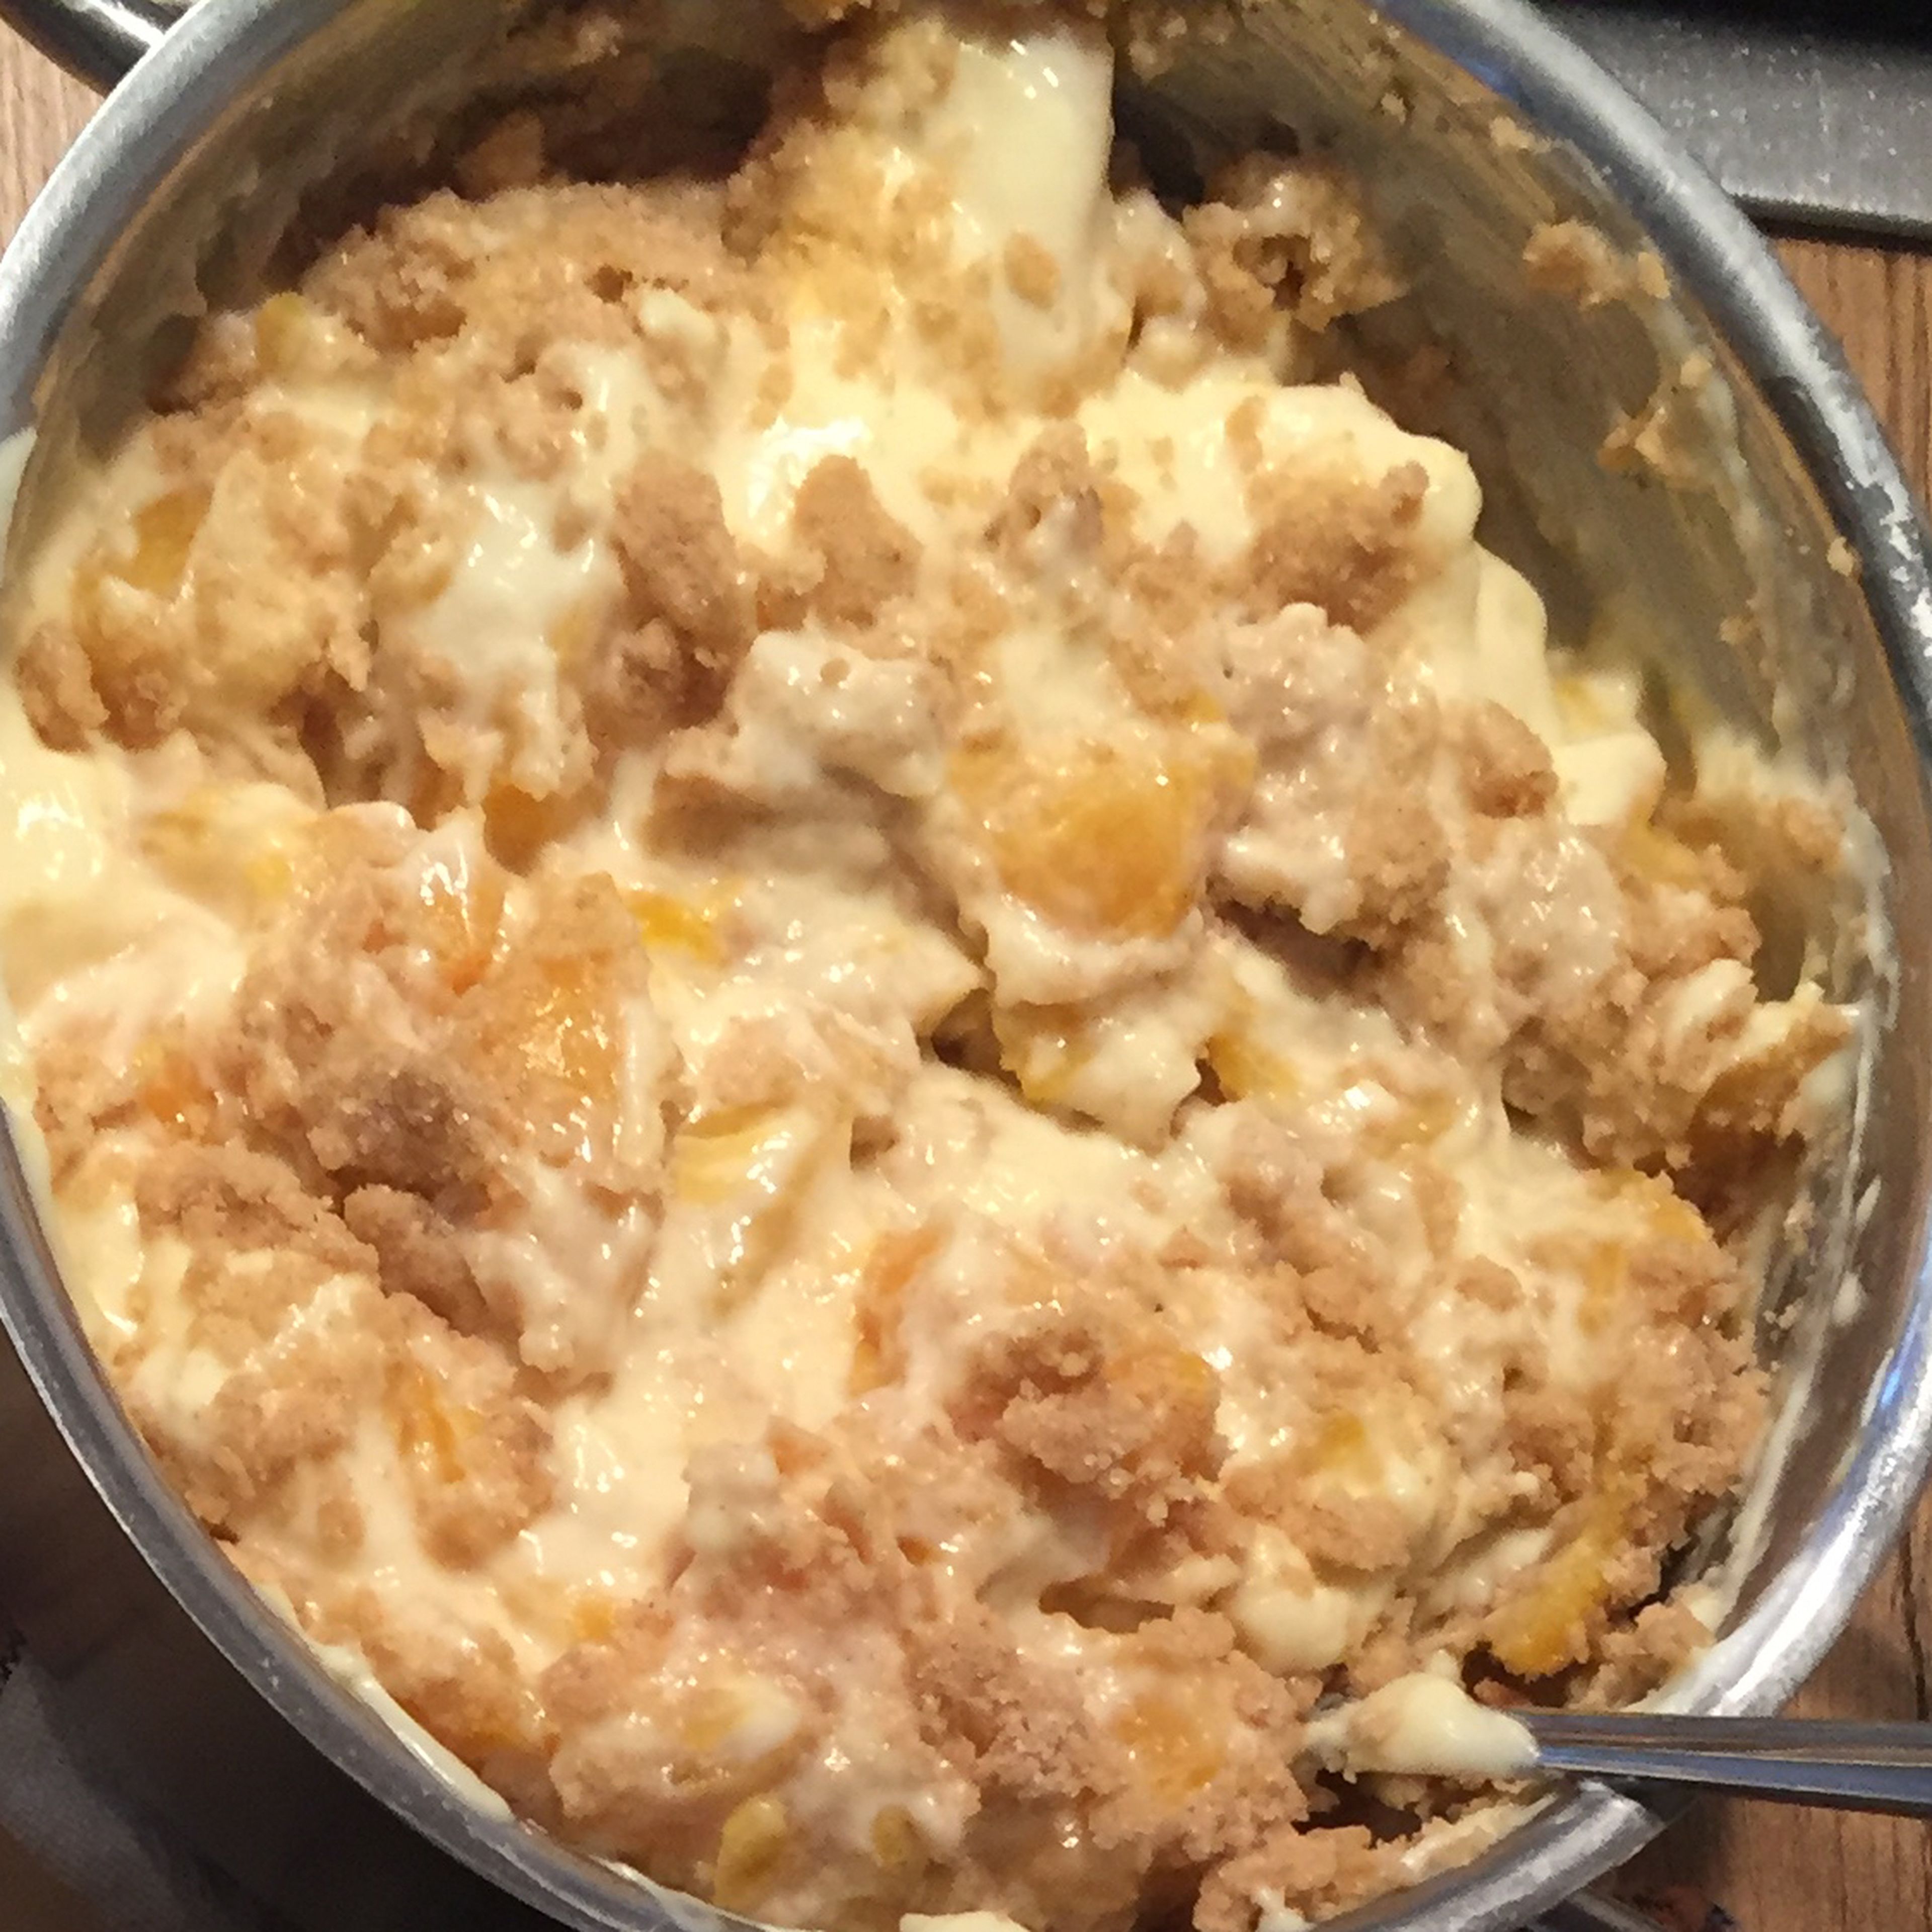 Die Pfirsiche in kleine, mundgerechte Stücke schneiden und mit dem Quark in die Puddingmasse einrühren.